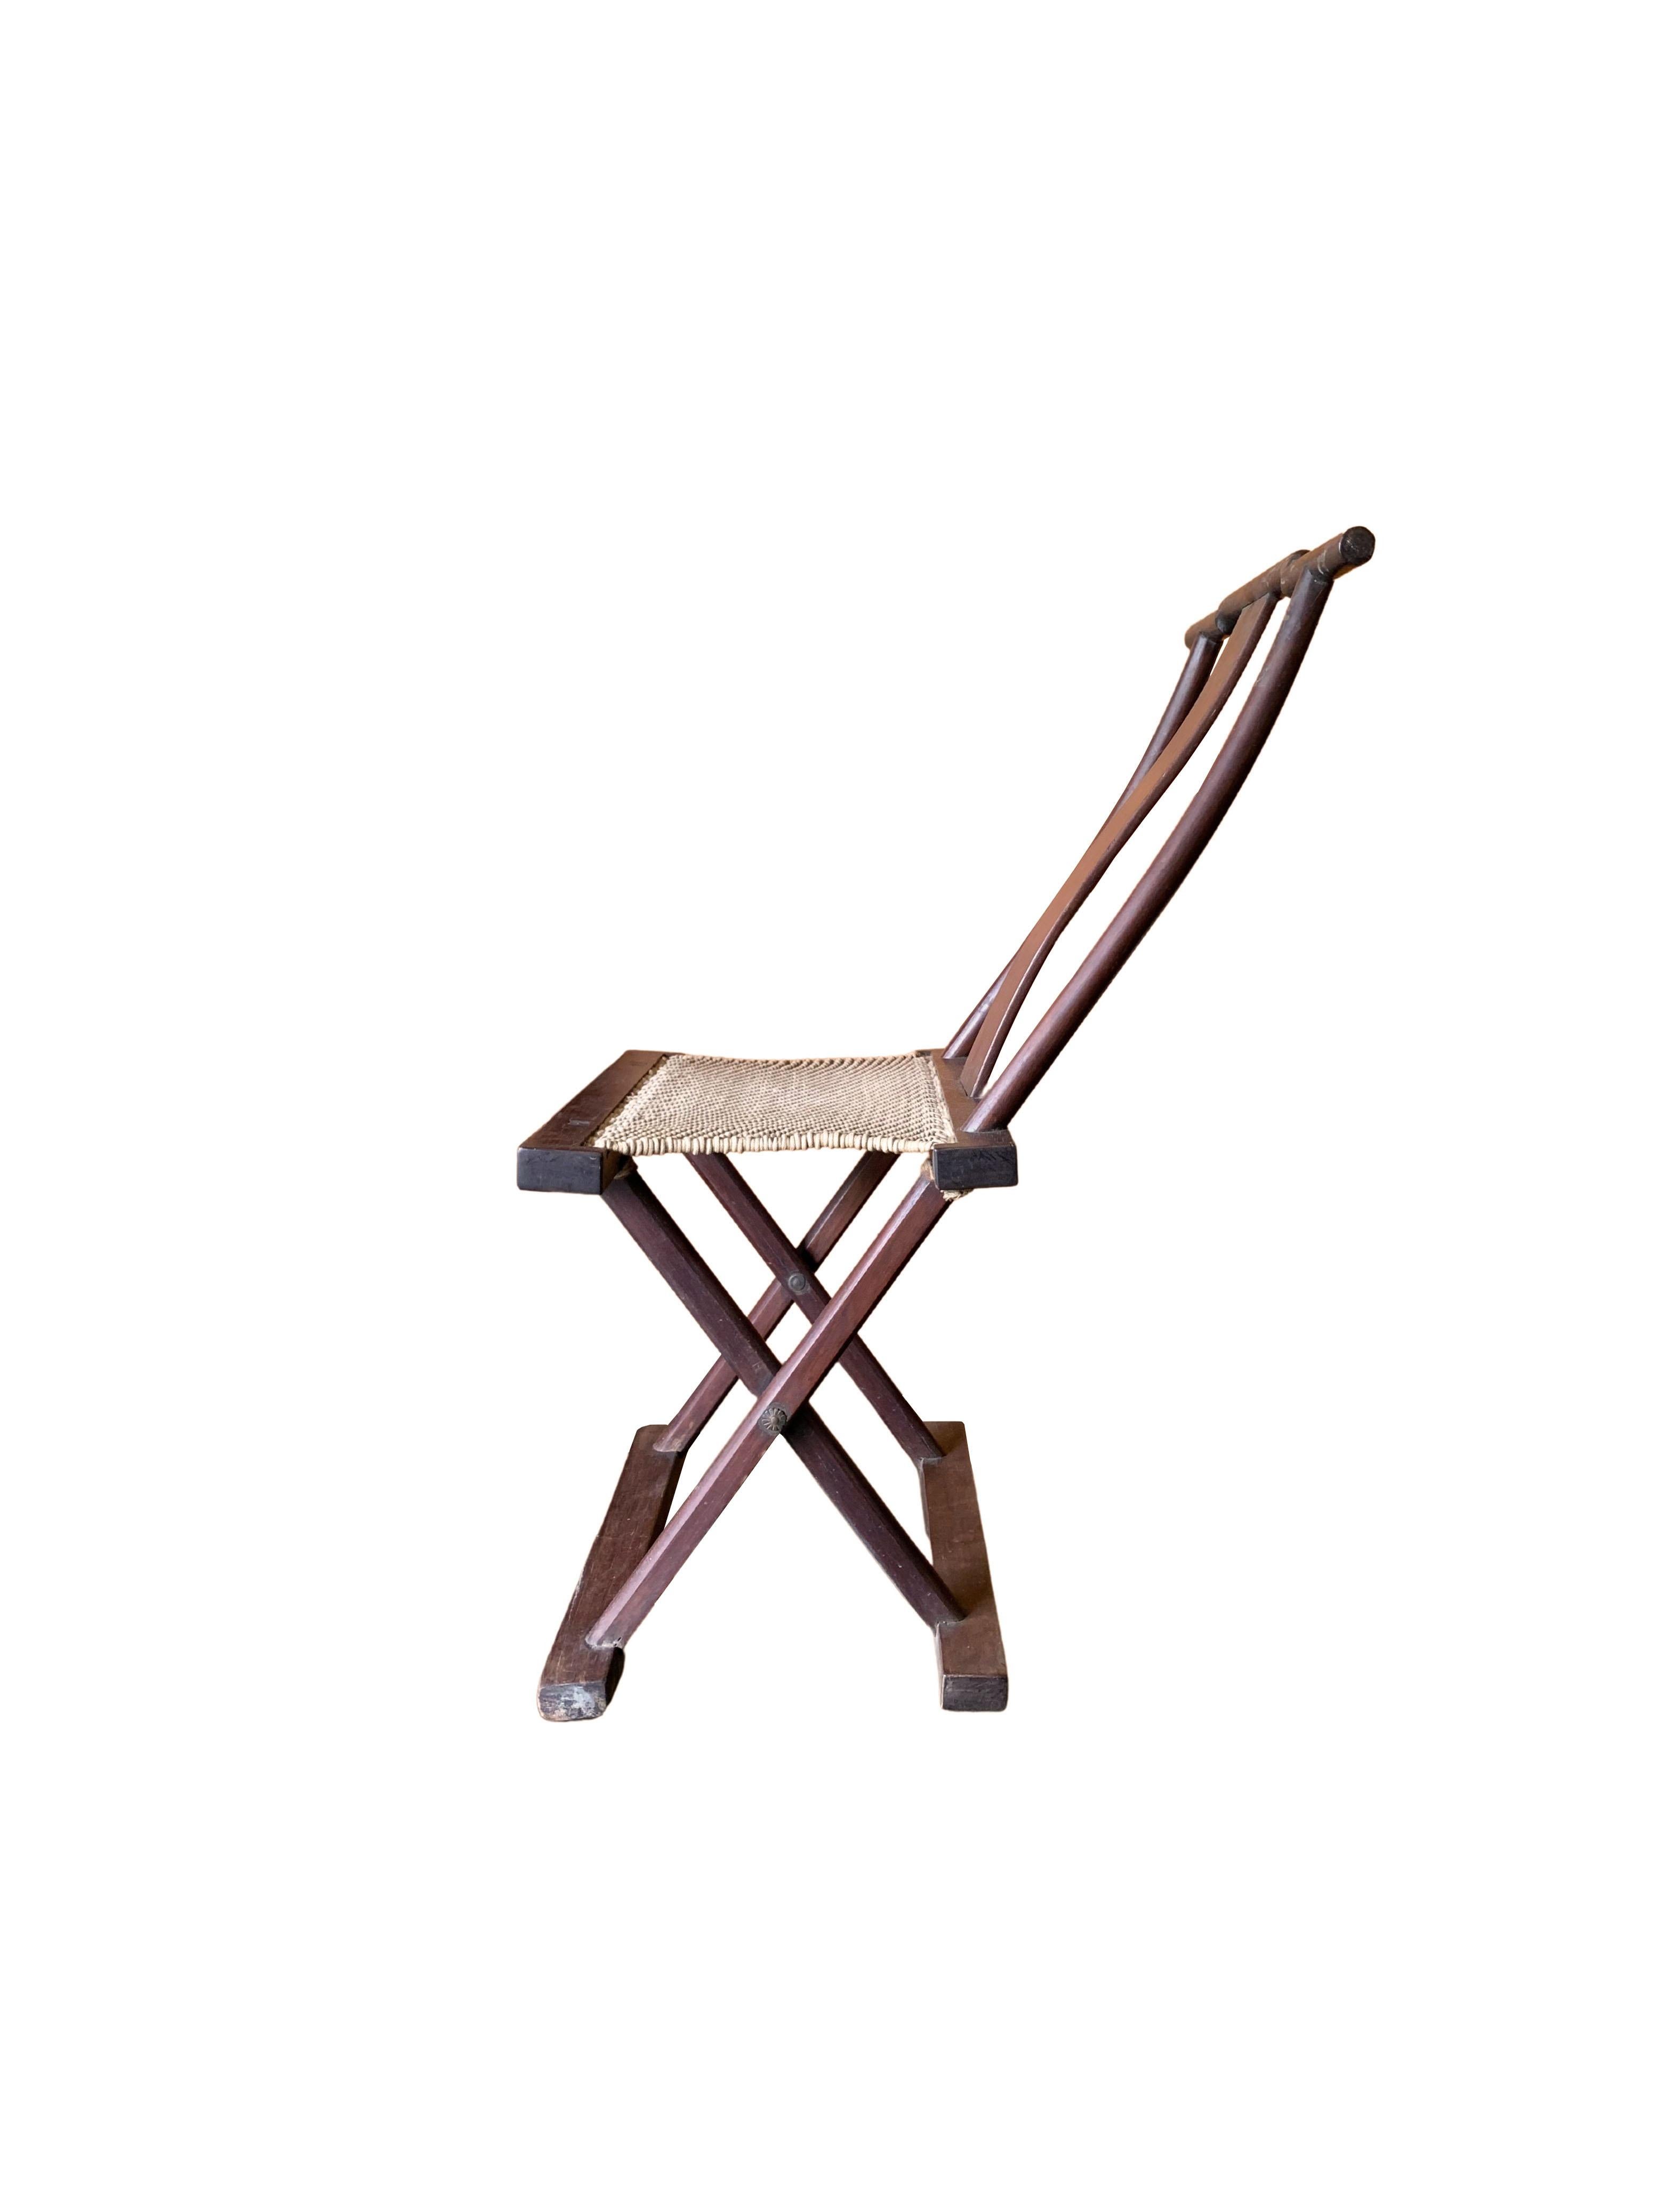 Dieser aus einem Holzrahmen gefertigte Klappstuhl aus dem frühen 20. Jahrhundert wurde einst von chinesischen Reisenden benutzt. Die Sitzfläche ist aus gewebtem Stoff gefertigt, der zusammen mit der Rückenlehne für einen bequemen Stuhl sorgt. Sein